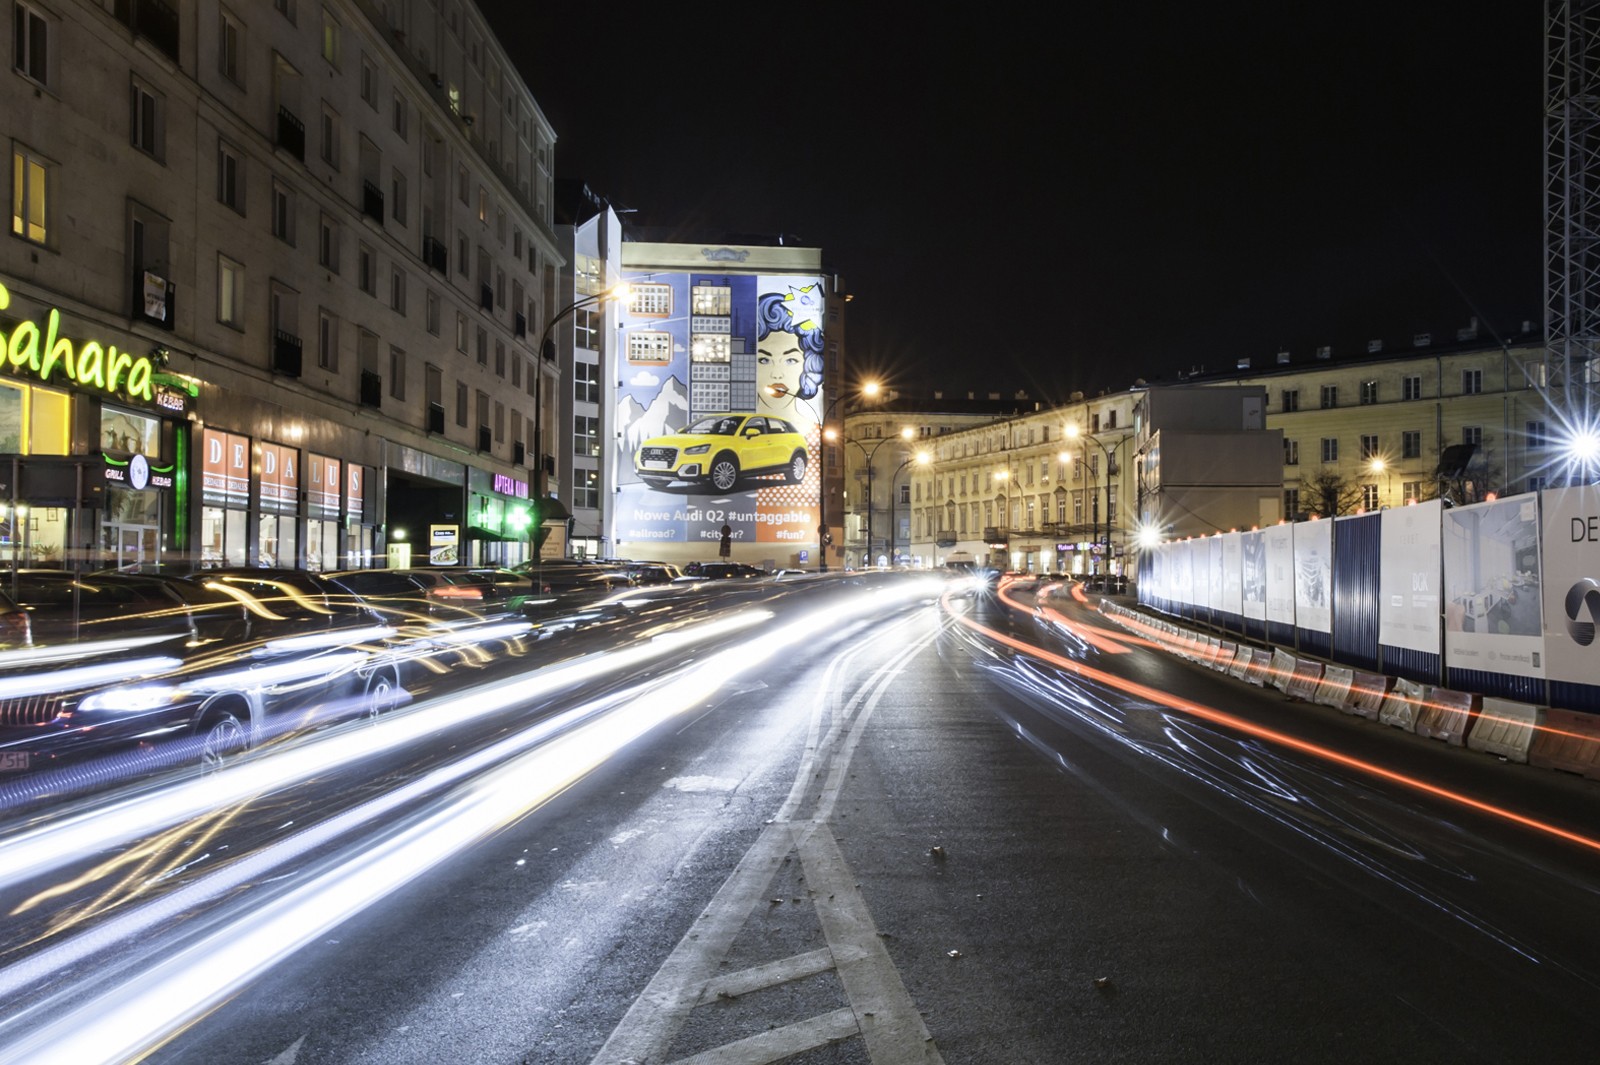 Mural reklamowy dla Audi Q2 w Warszawie na Brackiej | Audi Q2 | Portfolio